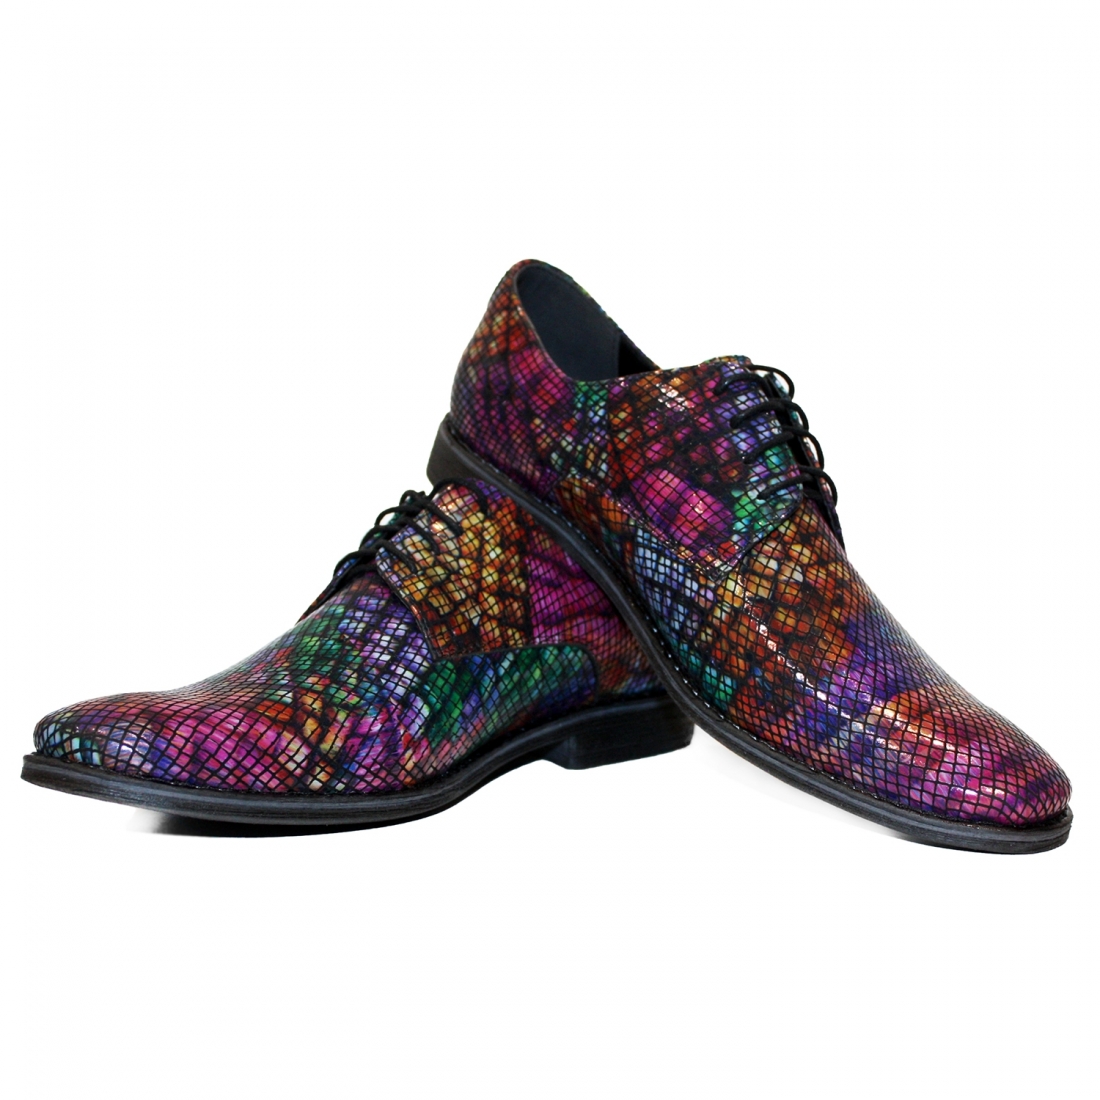 Modello Sireno - Chaussure Classique - Handmade Colorful Italian Leather Shoes